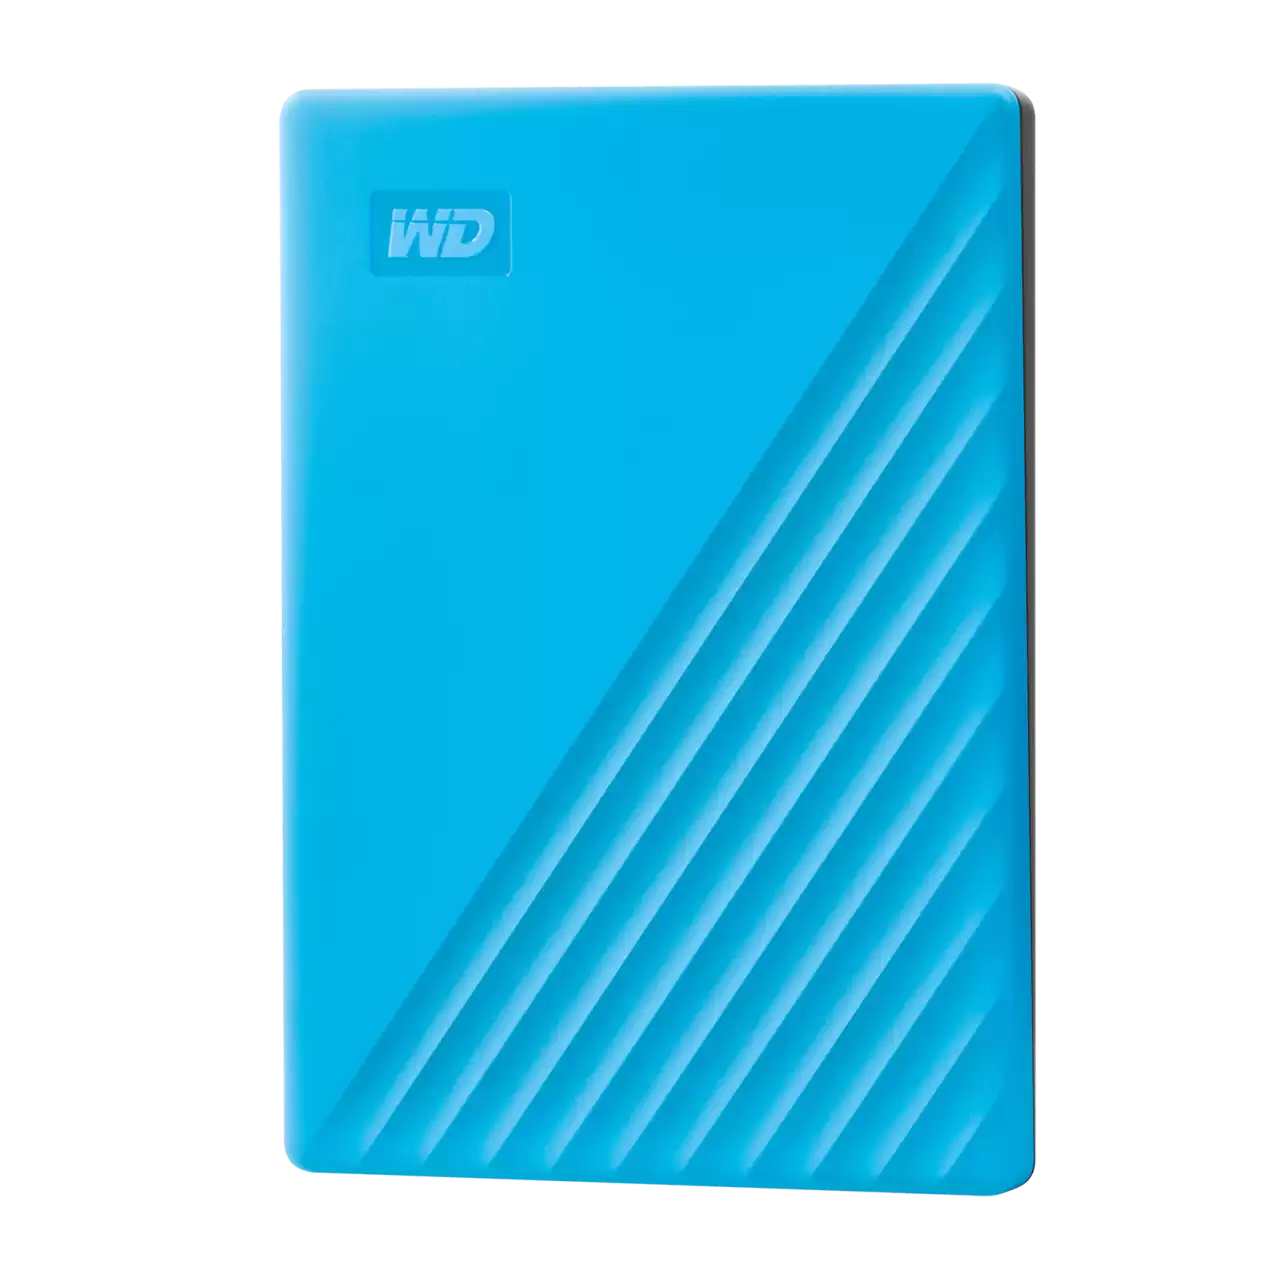 WD My Passport 2TB 2.5" External HDD - Blue (WDBYVG0020BBL)